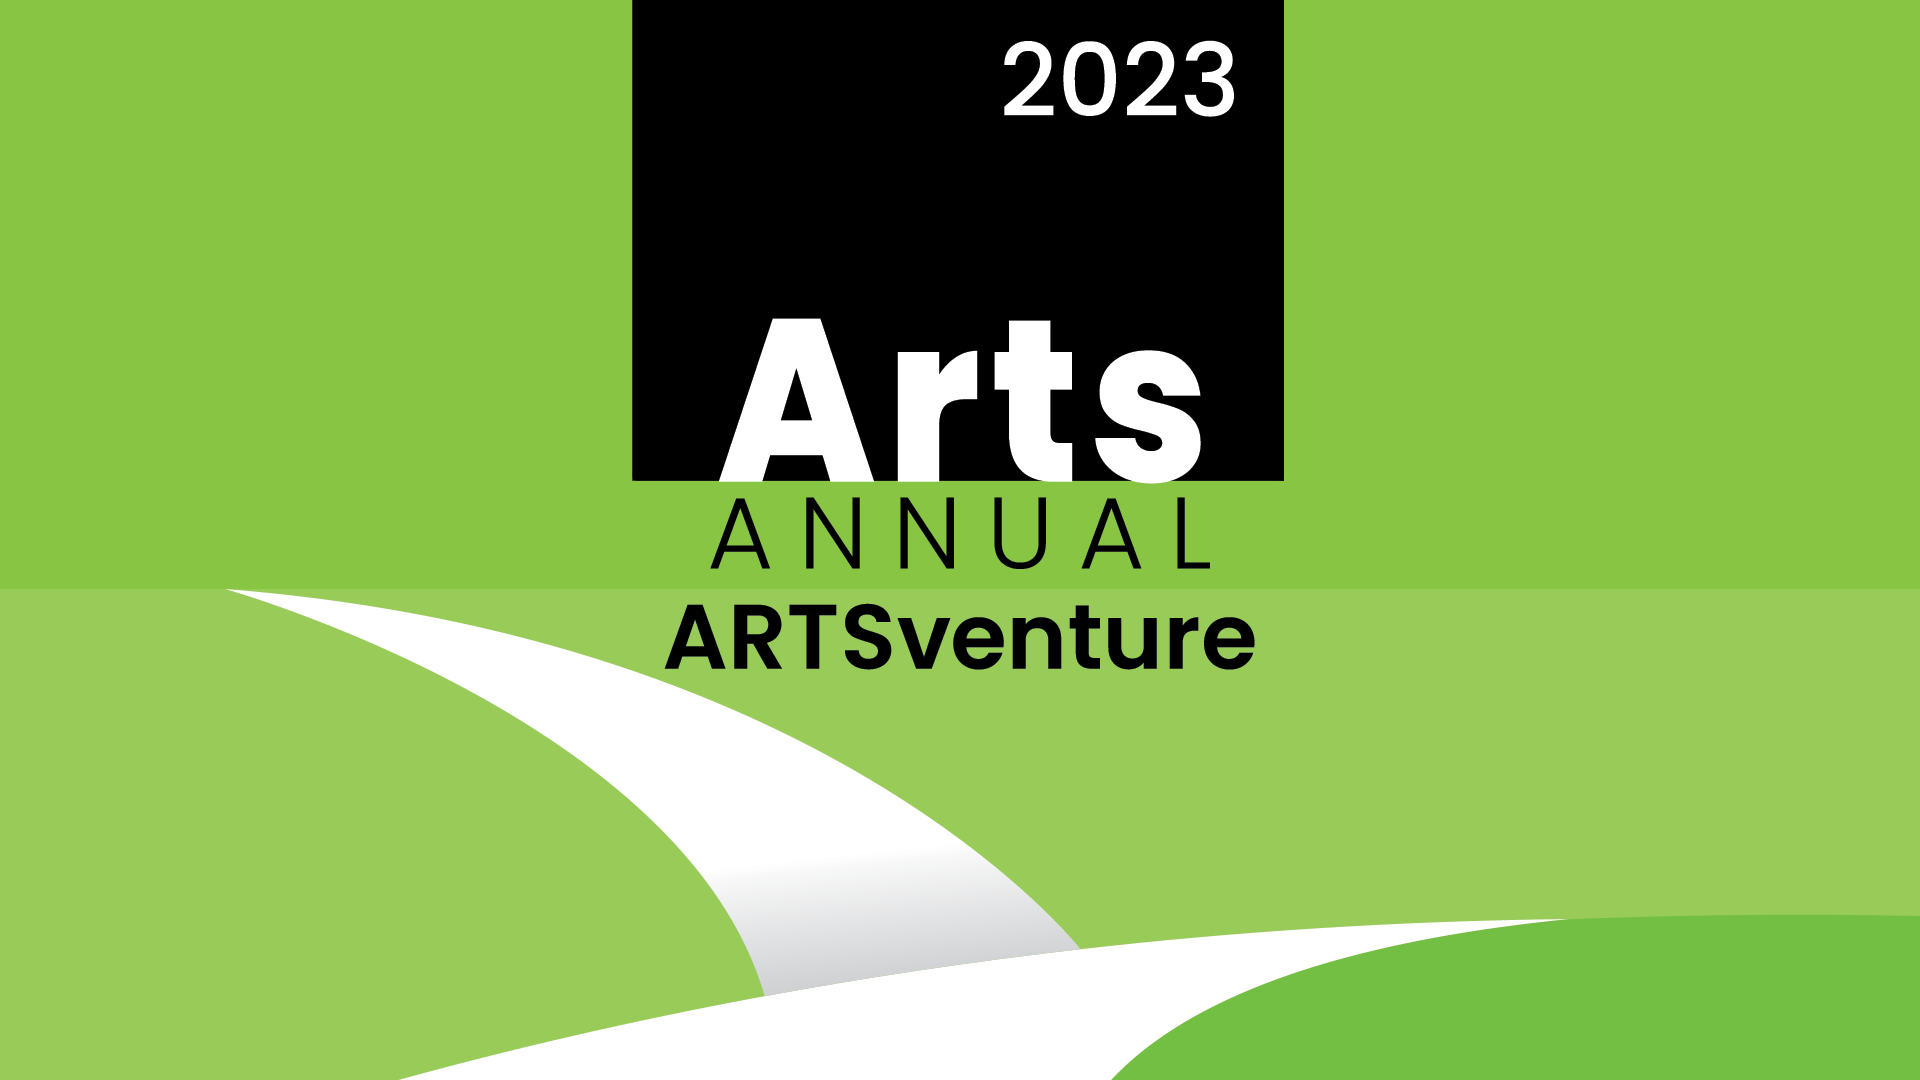 arts annual, artsventure, 2023